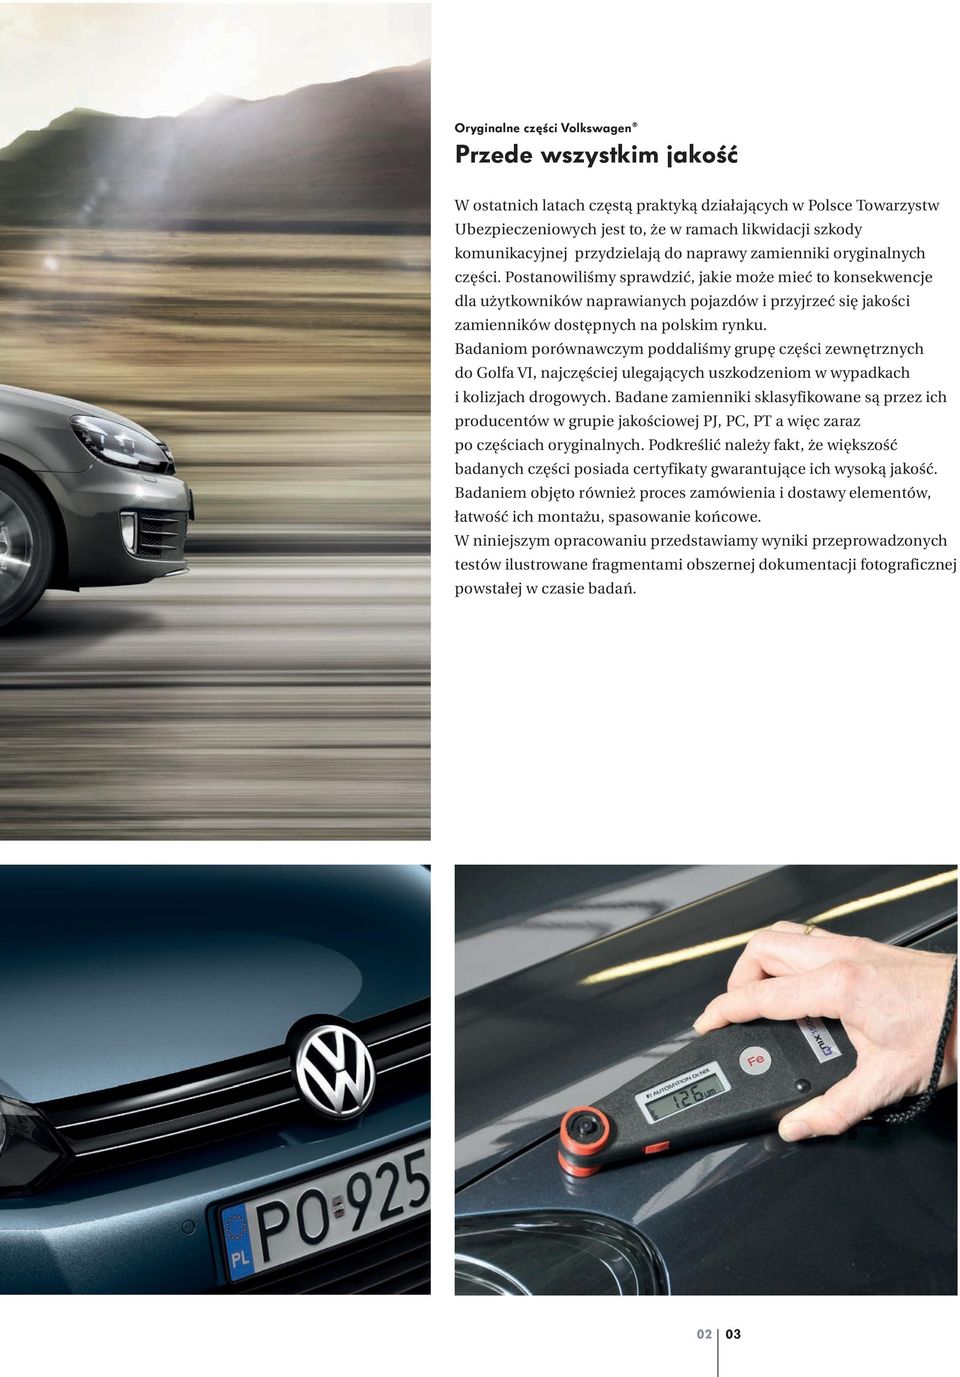 Postanowiliśmy sprawdzić, jakie może mieć to konsekwencje dla użytkowników naprawianych pojazdów i przyjrzeć się jakości zamienników dostępnych na polskim rynku.